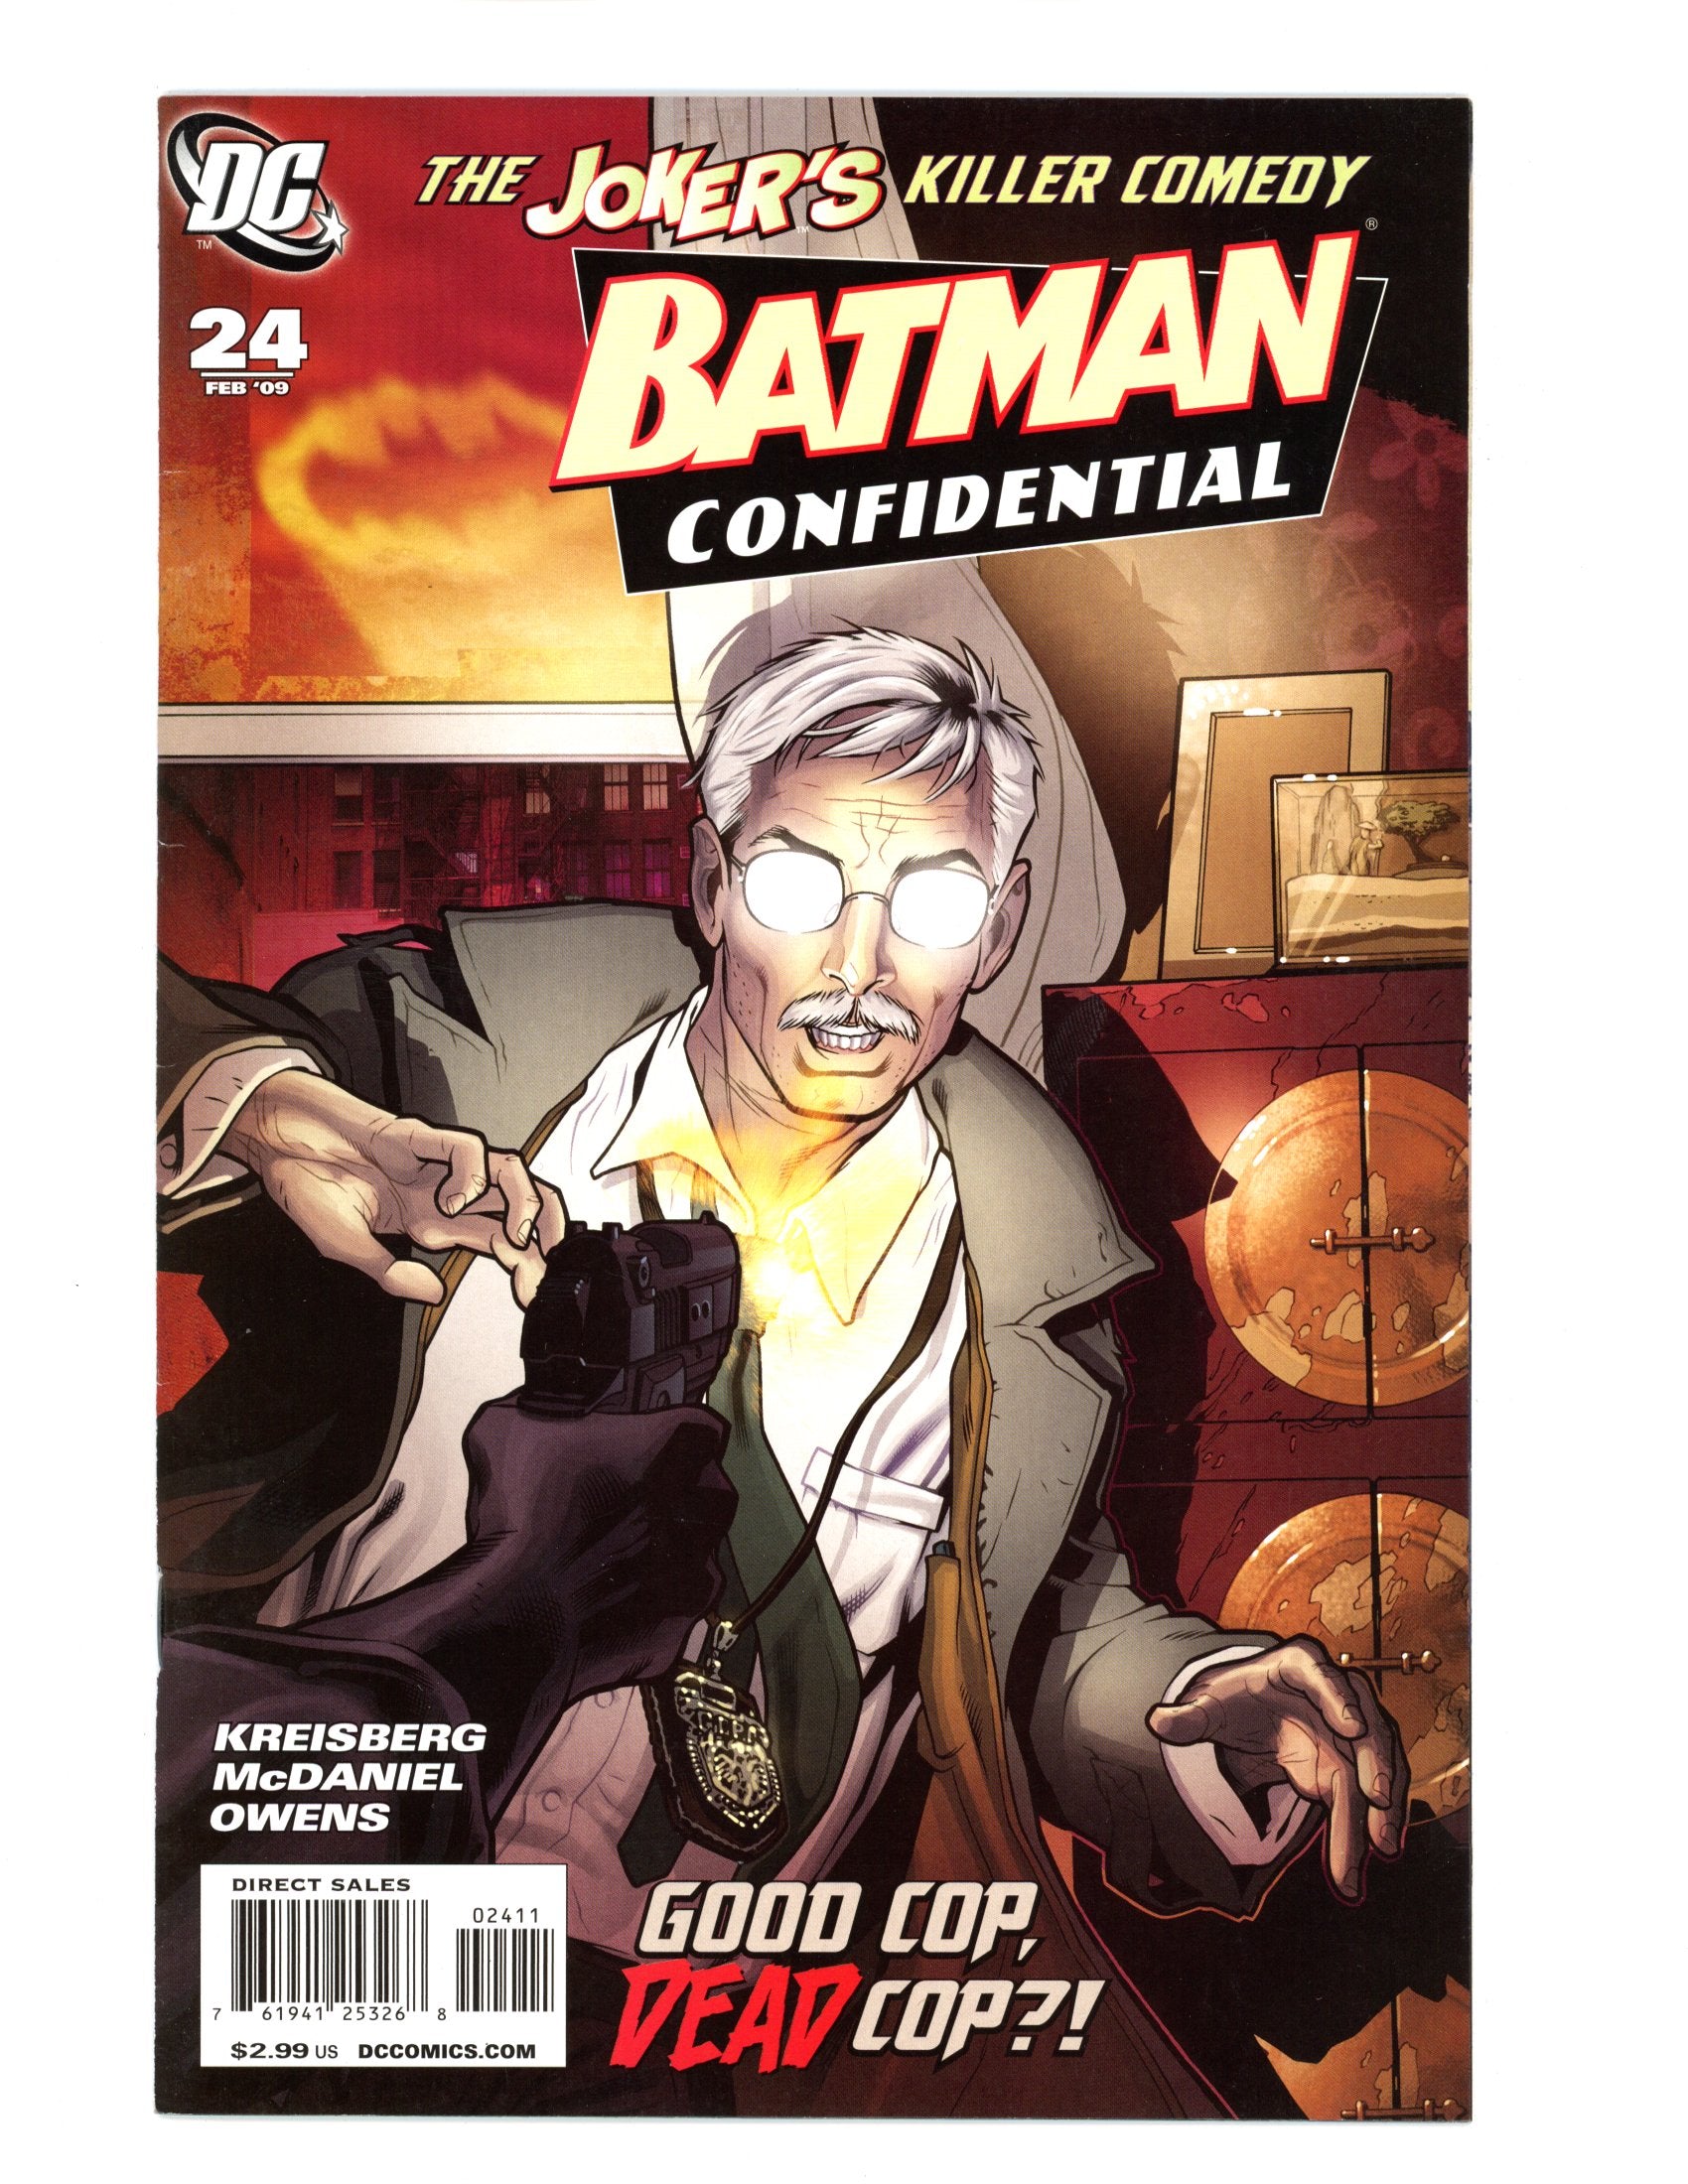 2009 Batman Confidential The Jokers Killer Comedy DC Comics VOL #24 FE